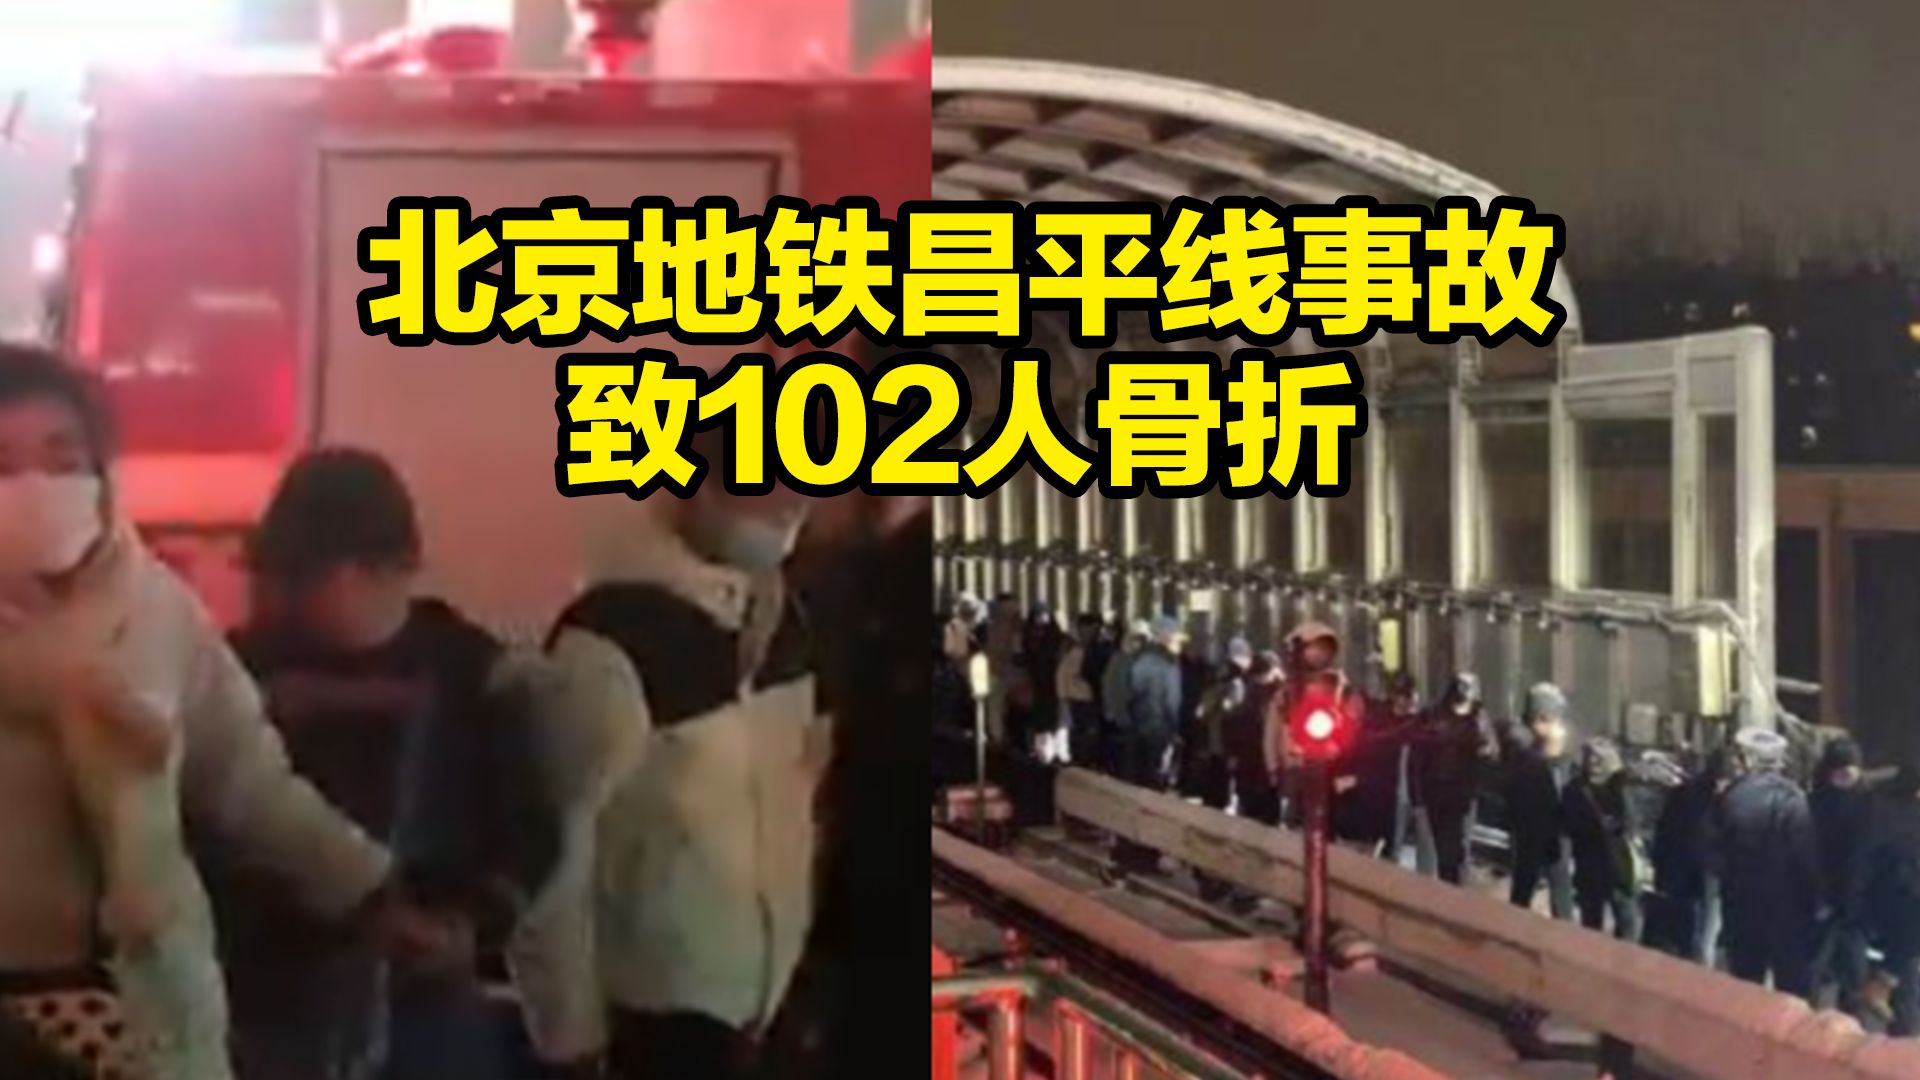 北京地铁事故原因系雪天轨滑导致追尾 ,已完成现场救援应急处置,102人